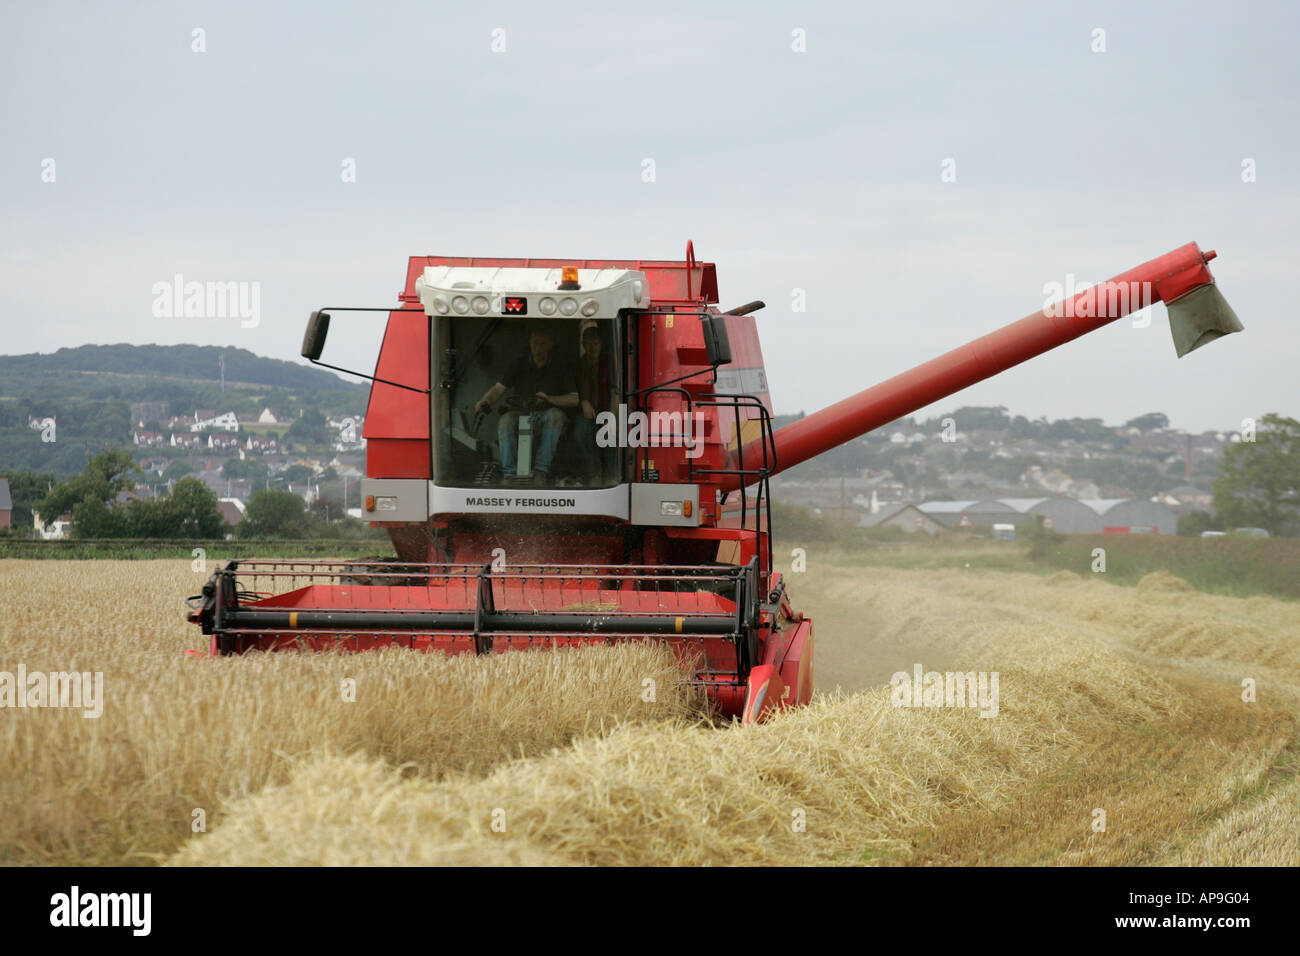 Rouge Massey Ferguson combine harvester in wheat field newtownards irlande du nord du comté de Down Banque D'Images